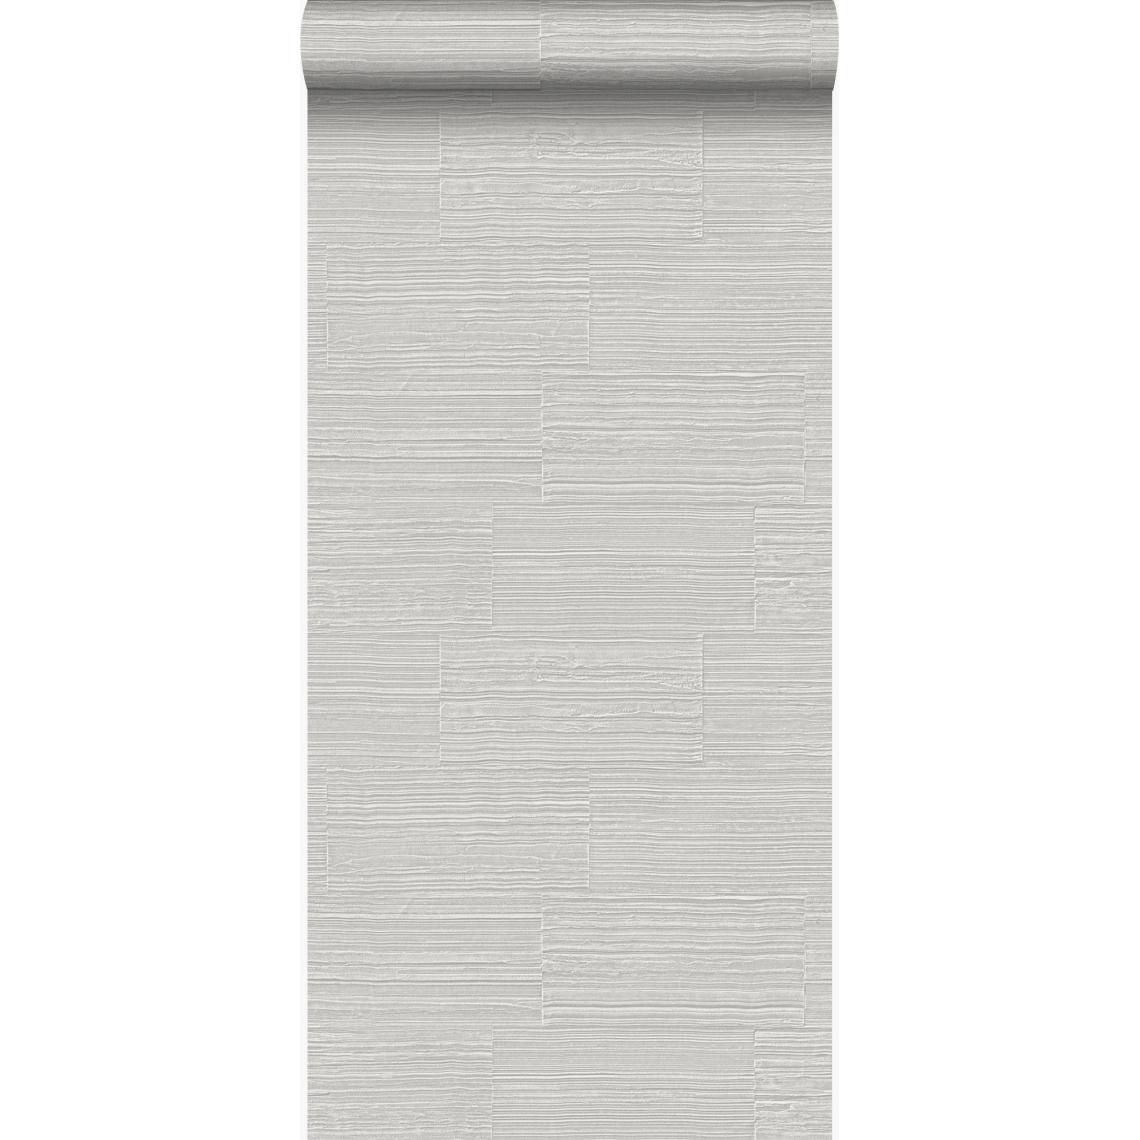 Origin - Origin papier peint pierre naturelle brute rétro en appareil de panneresses gris clair - 347576 - 53 cm x 10.05 m - Papier peint